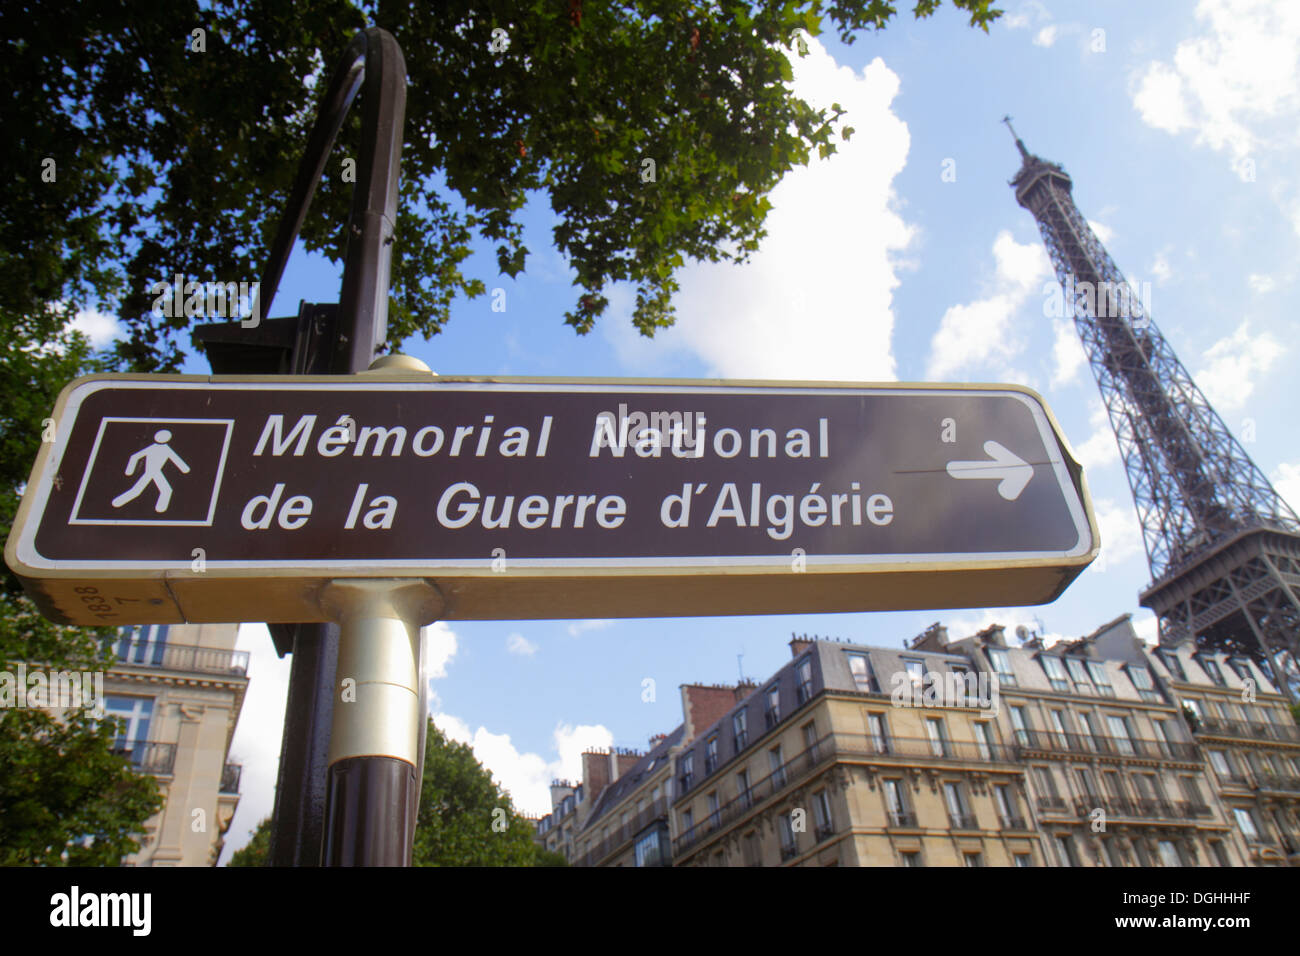 Paris France,7th arrondissement,Quai Branly,sign,Memorial National de la Guerre d'Algerie,National Memorial of the war in Algeria,Eiffel Tower,France1 Stock Photo